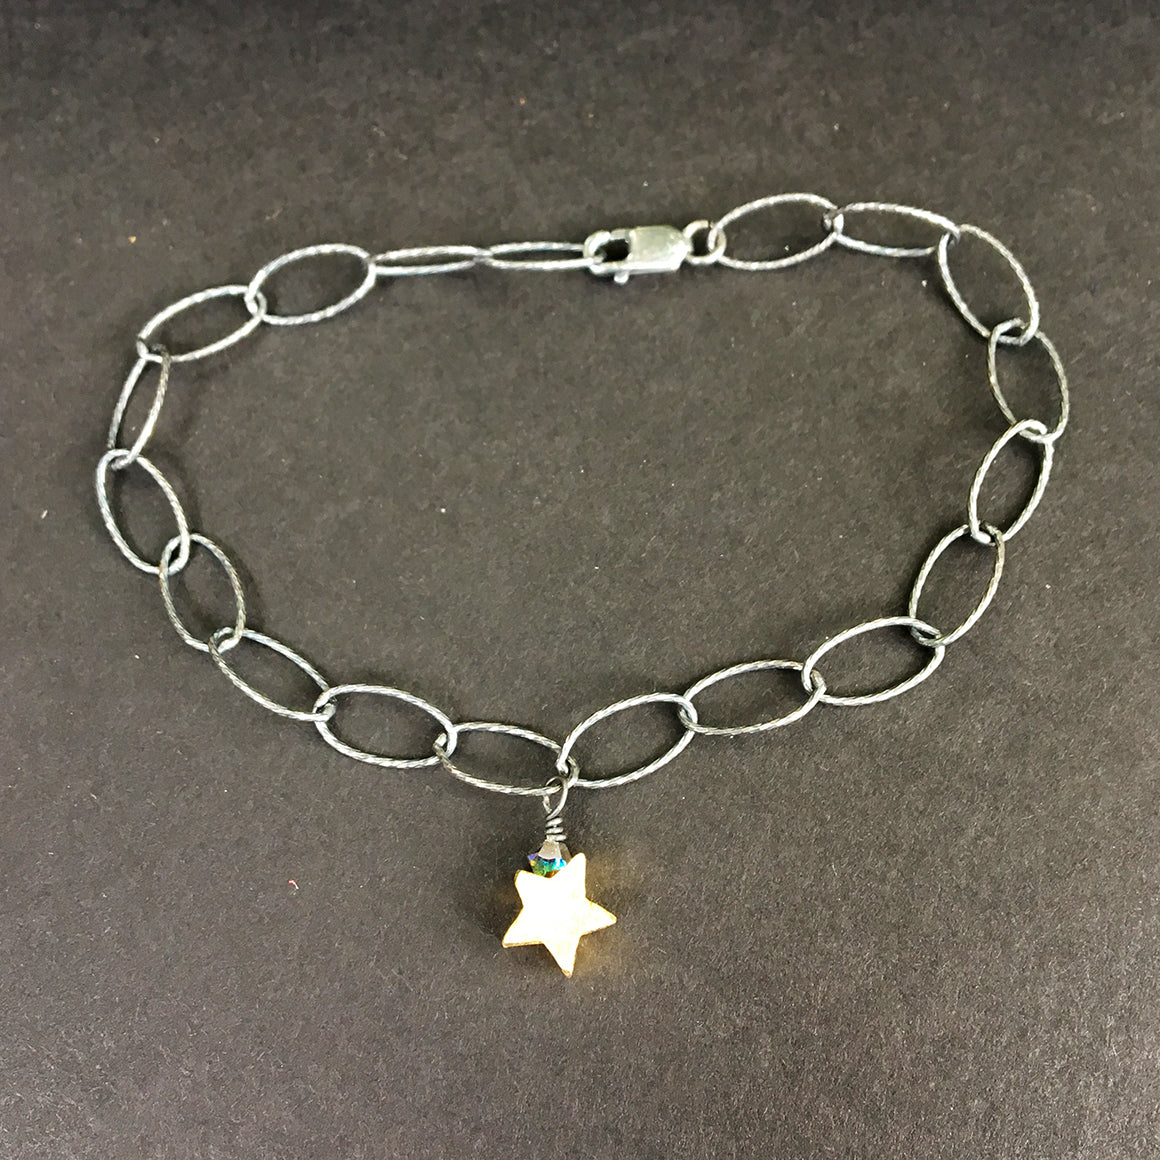 Loose Link Bracelet with Star